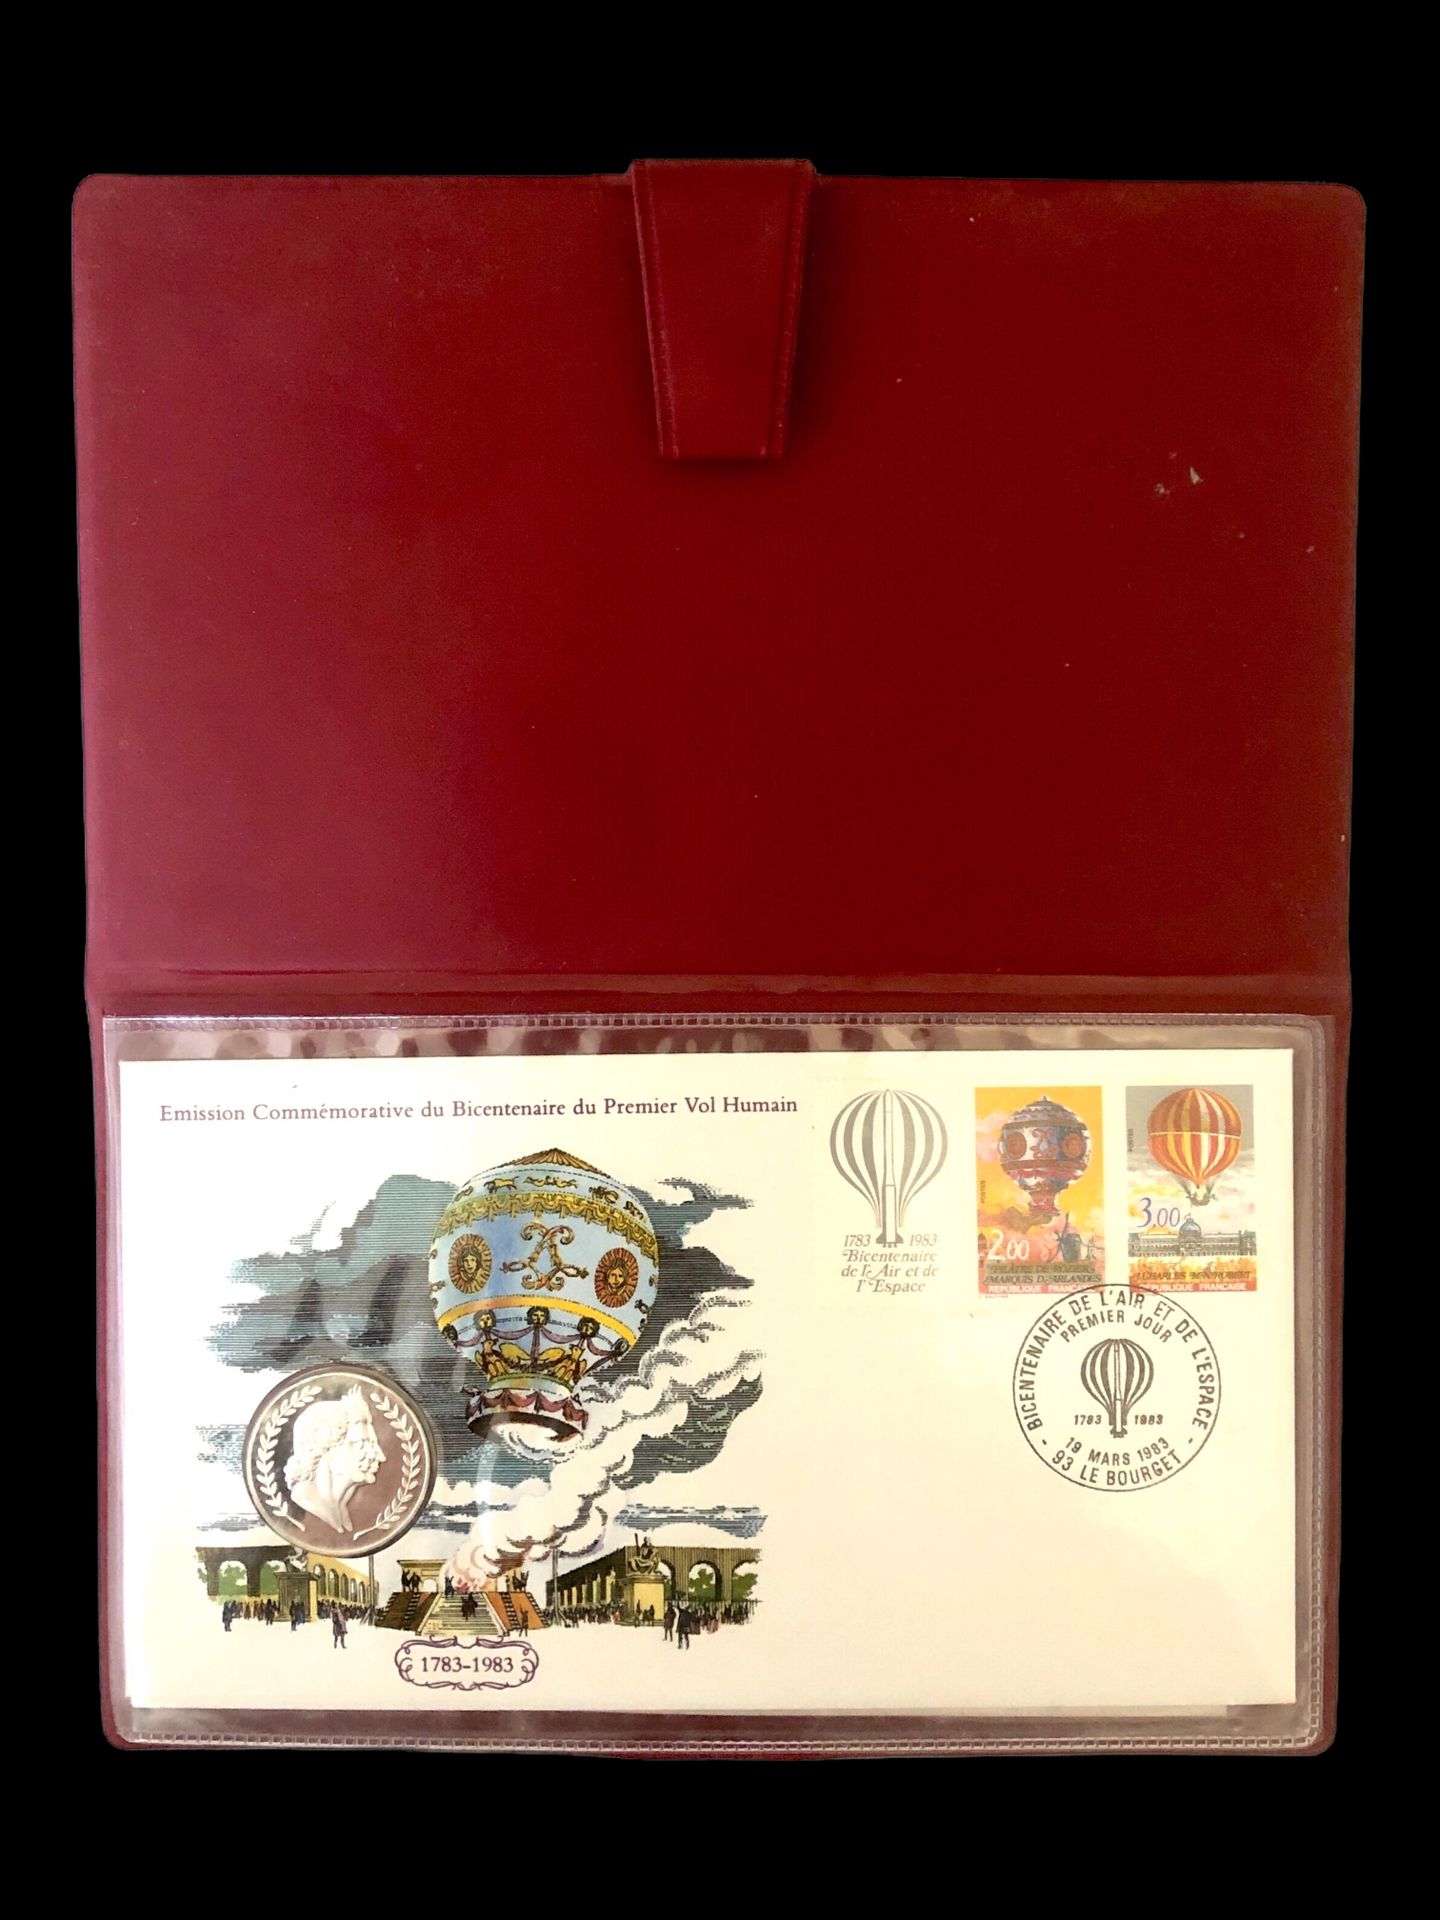 Null 富兰克林奖章版。1983.

"人类首次飞行二百周年纪念刊"。三套包括两枚邮票的信封和一枚奖章。富兰克林勋章获得者的版本。